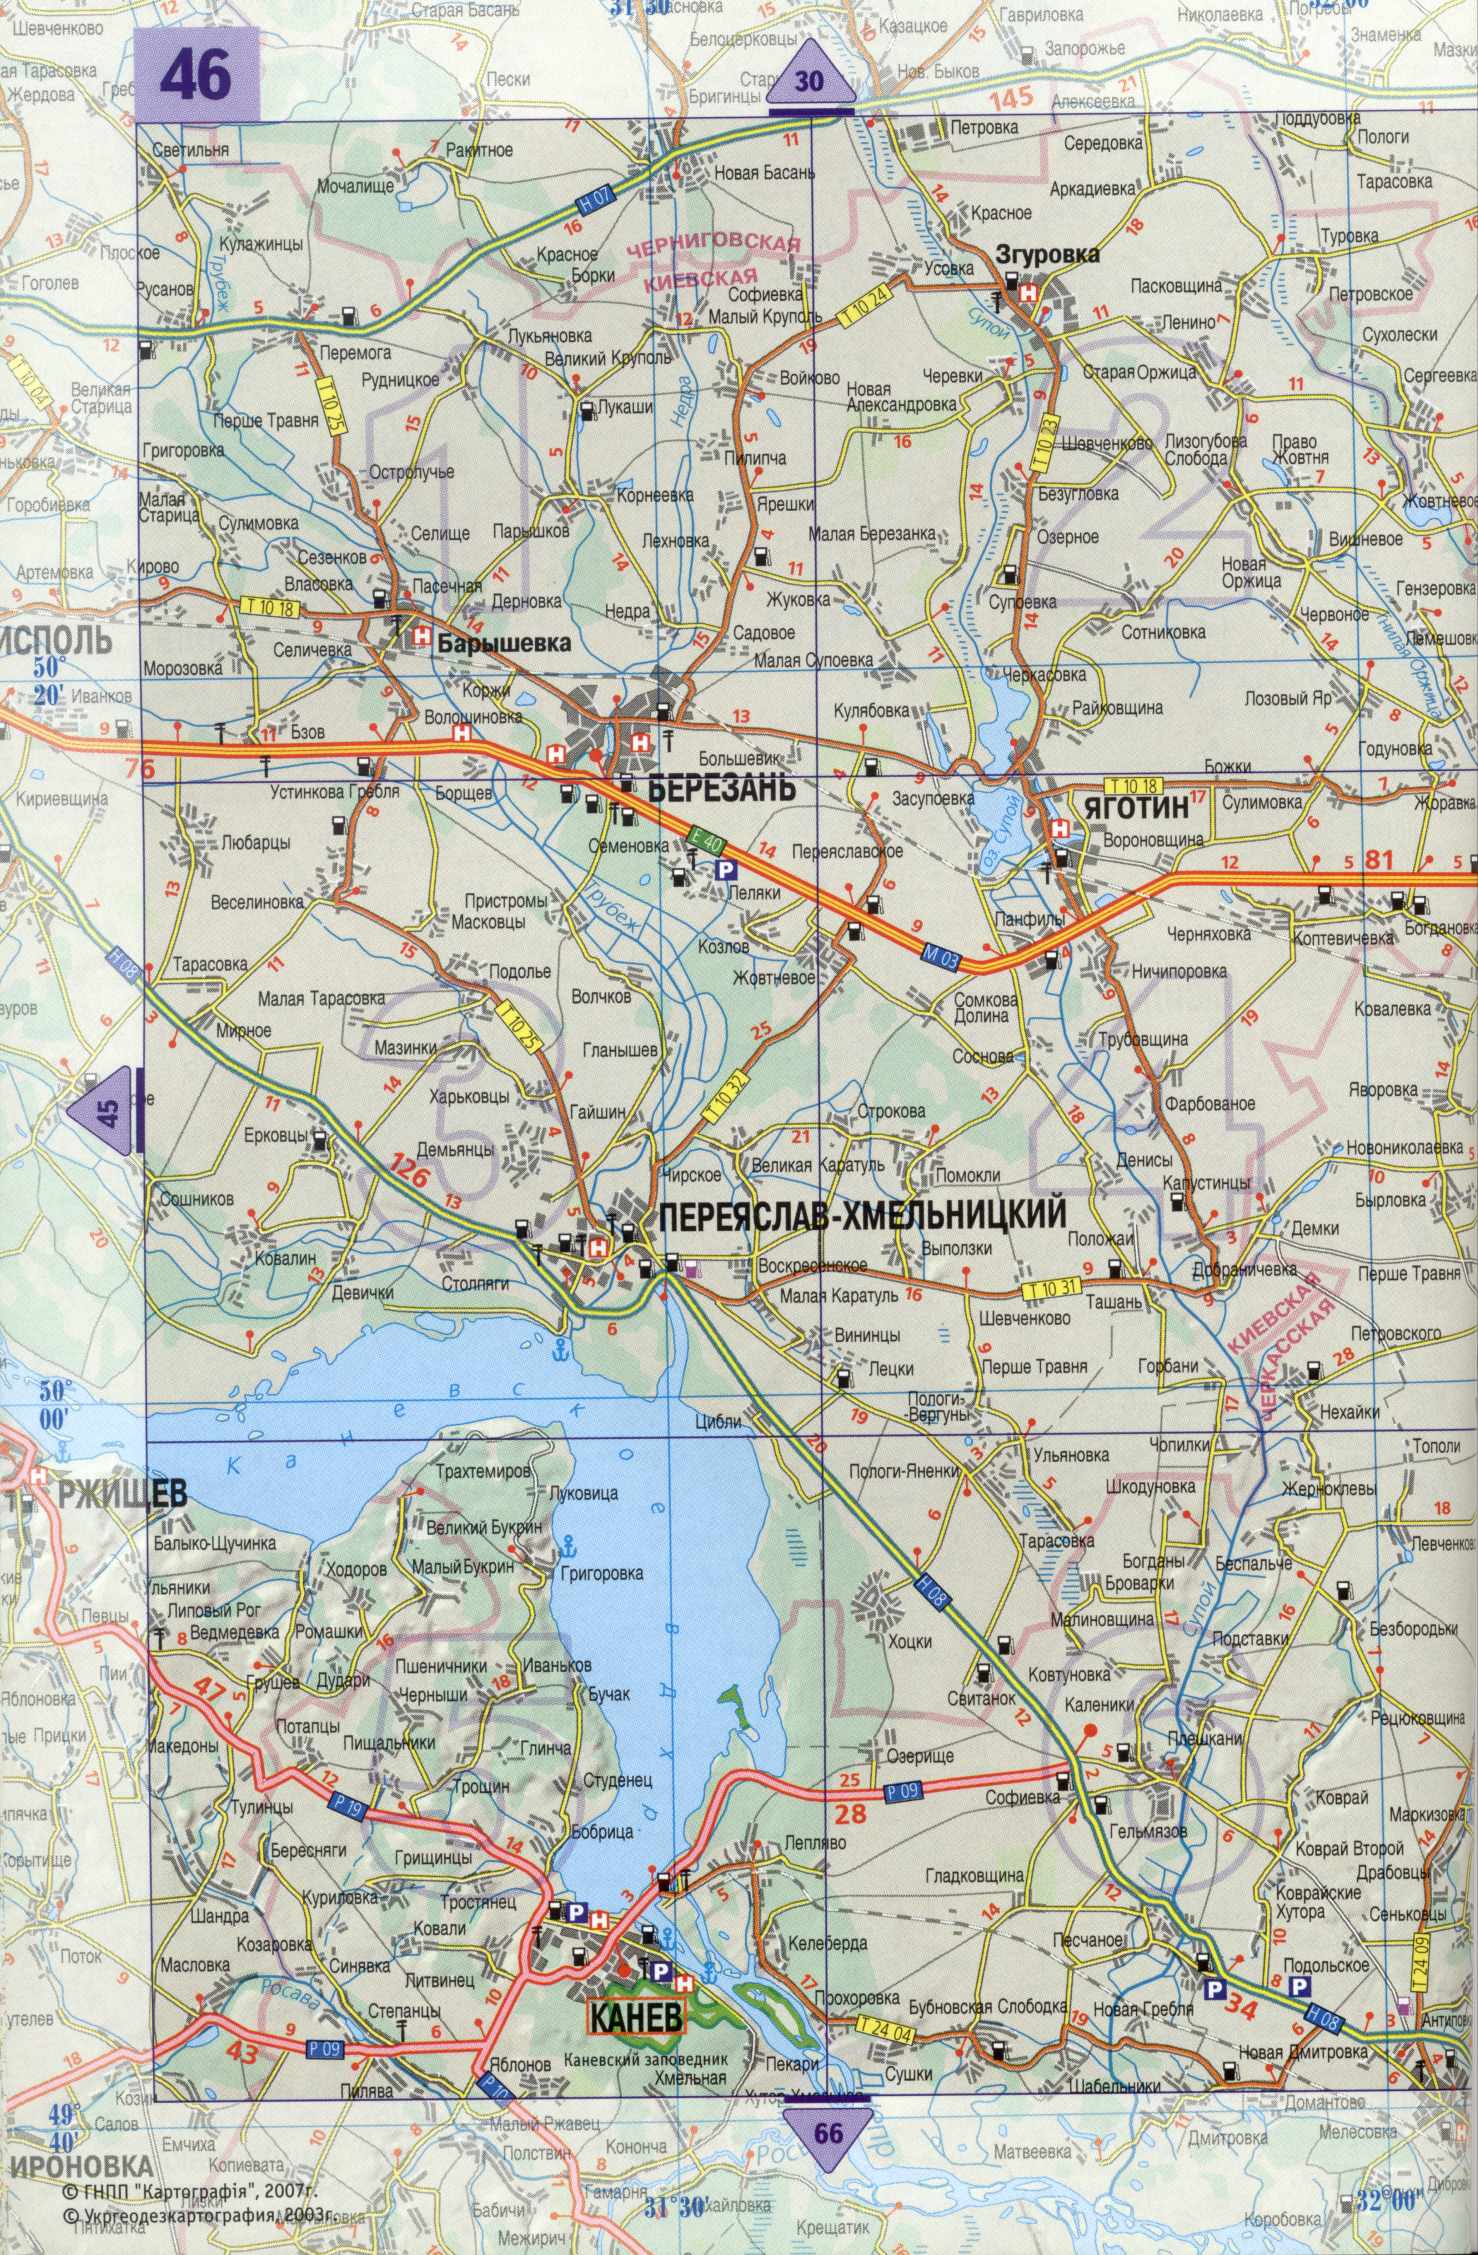 Украина Карта / Карта Украины. Украина на карте мира - Planetolog.ru ...